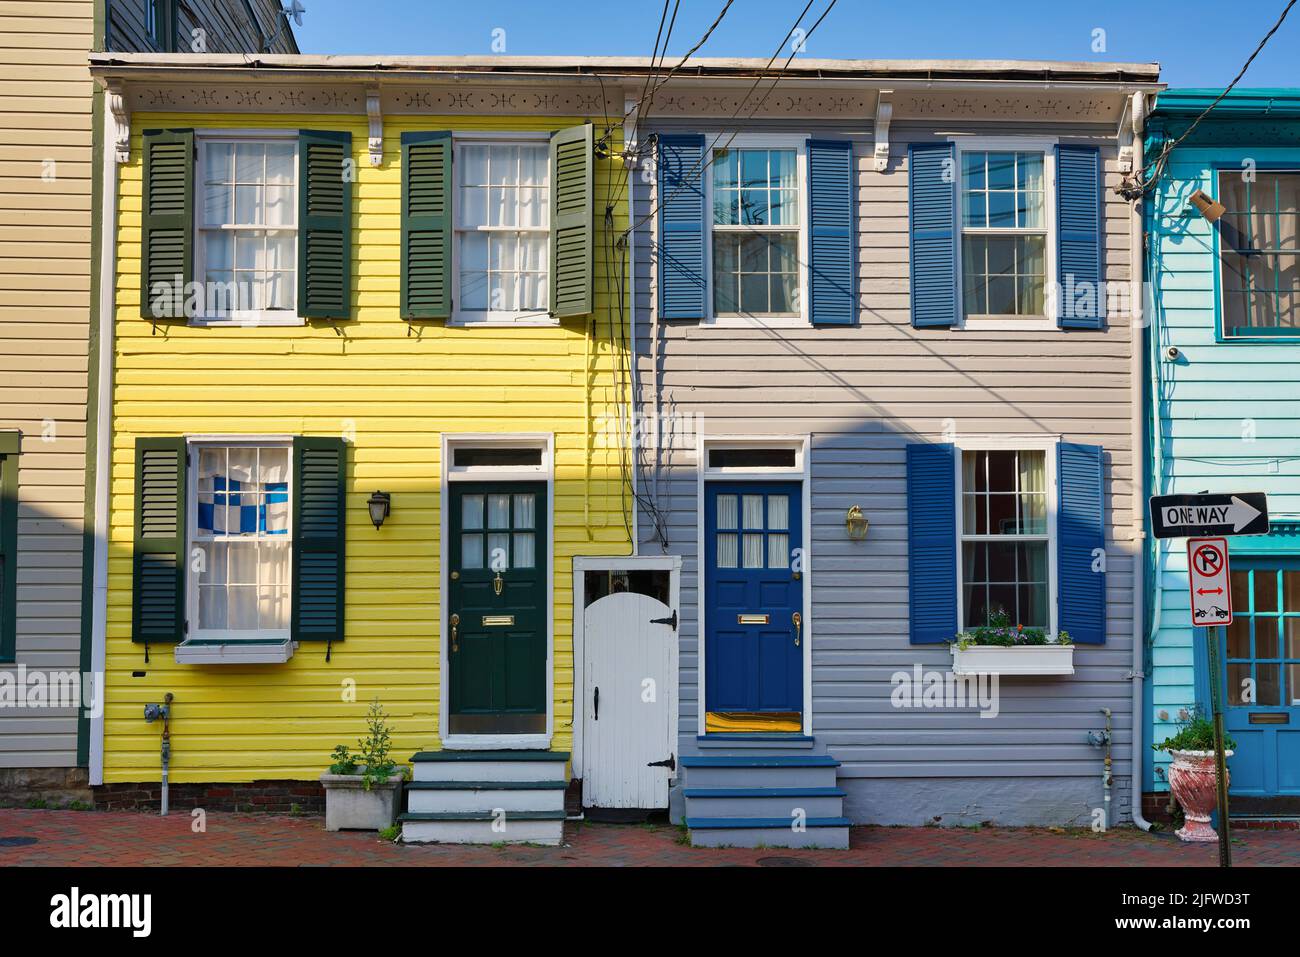 Casas históricas en el centro de Annapolis, Maryland, Estados Unidos. Típica arquitectura colorida en la capital de Maryland. Foto de stock